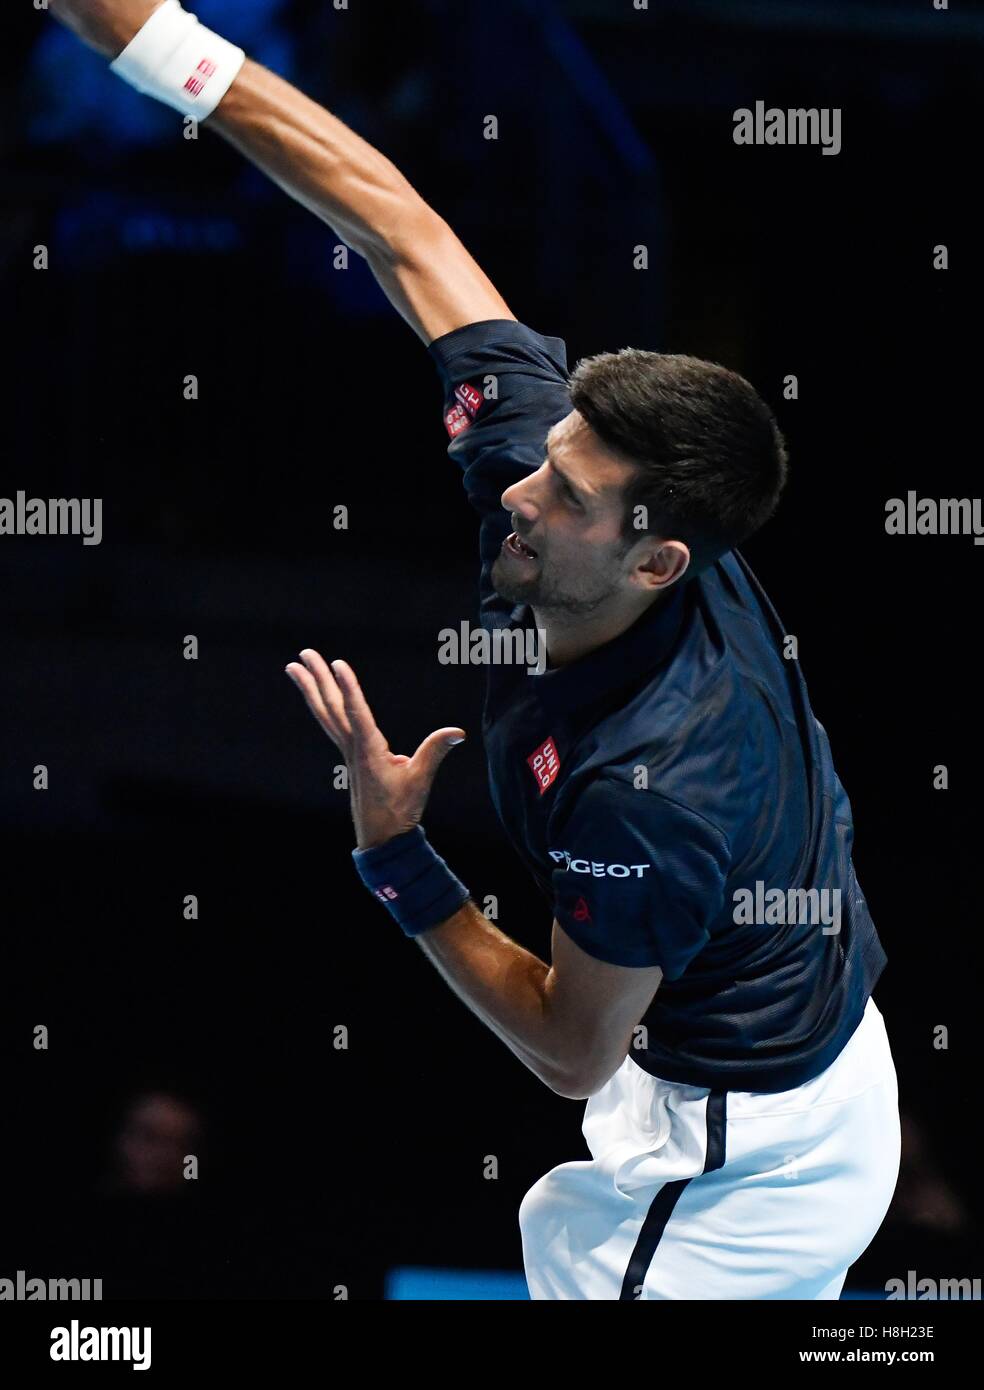 Londres, Royaume-Uni. 13 novembre, 2016. Barclays ATP World Tour Finals 02 Arena London UK Novak Djokovic SRB v Dominic Thiem AUT Djokovic en action pendant le match qu'il a gagné 2-1 Crédit : Leo Mason/Alamy Live News Banque D'Images